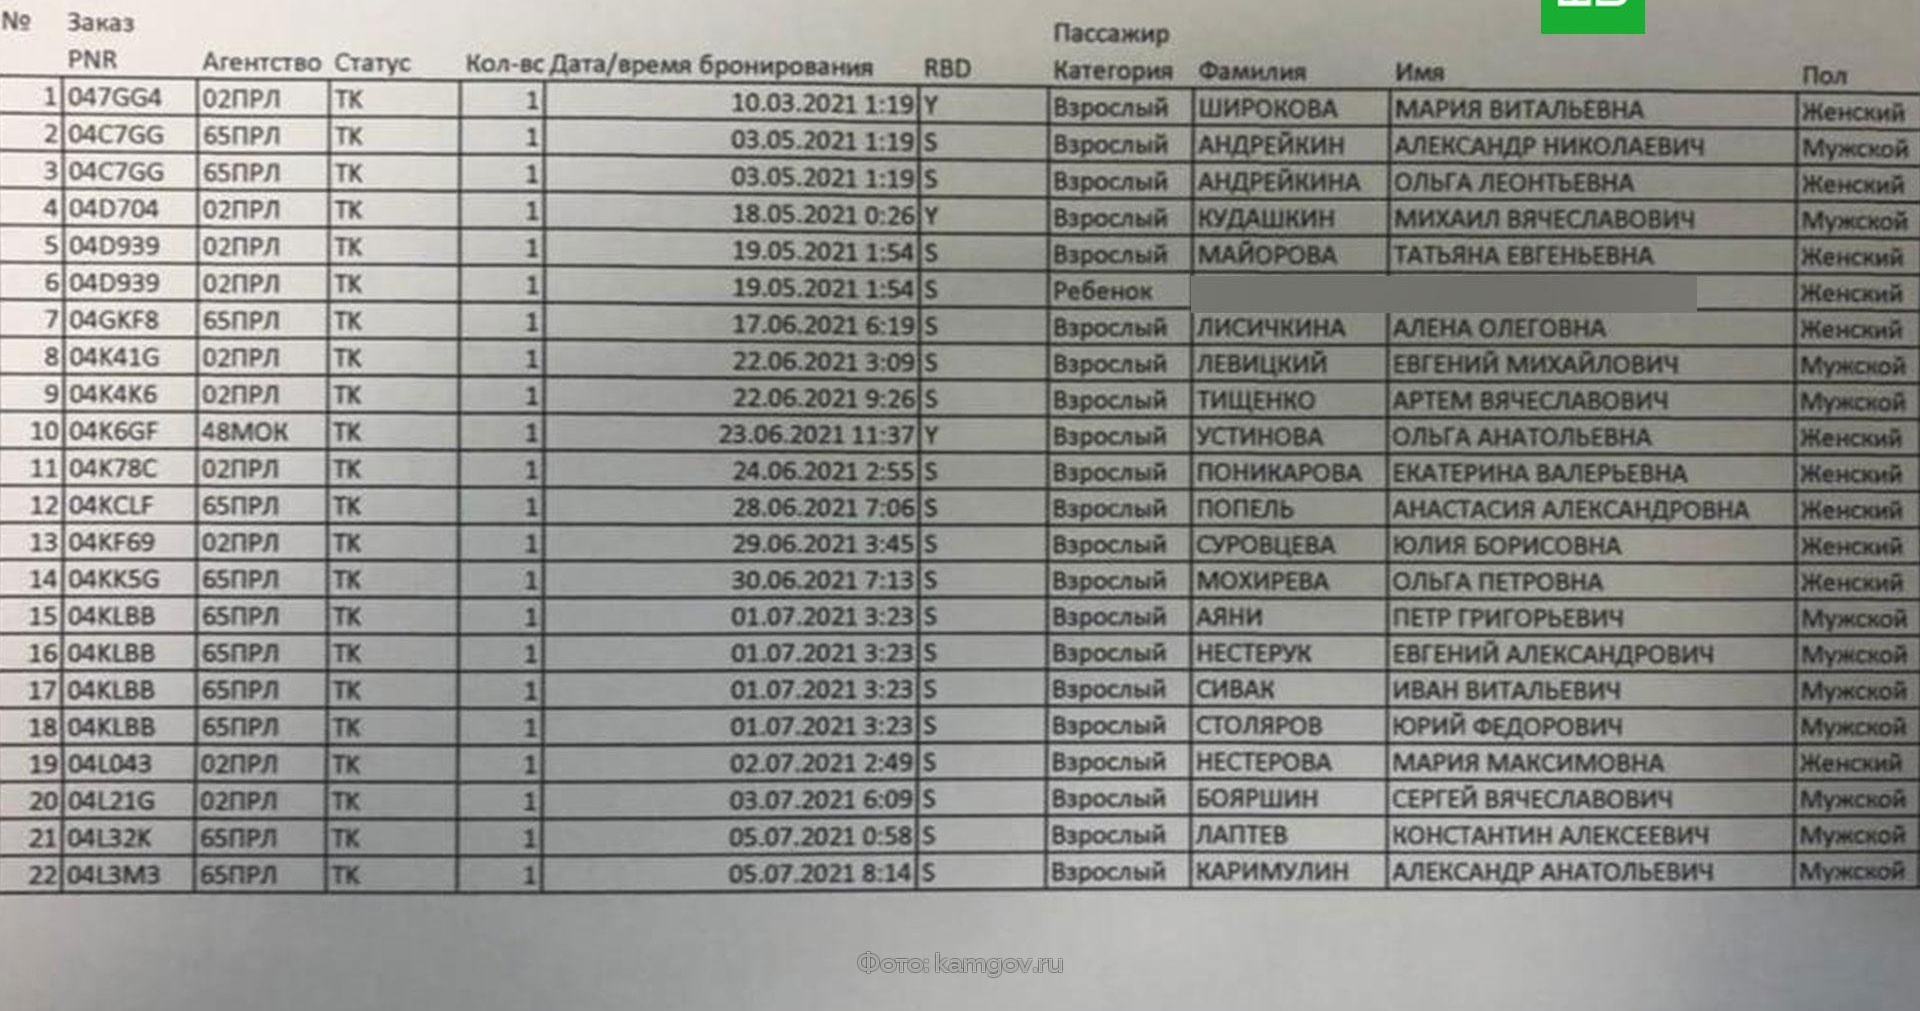 Список экипажа АН 26